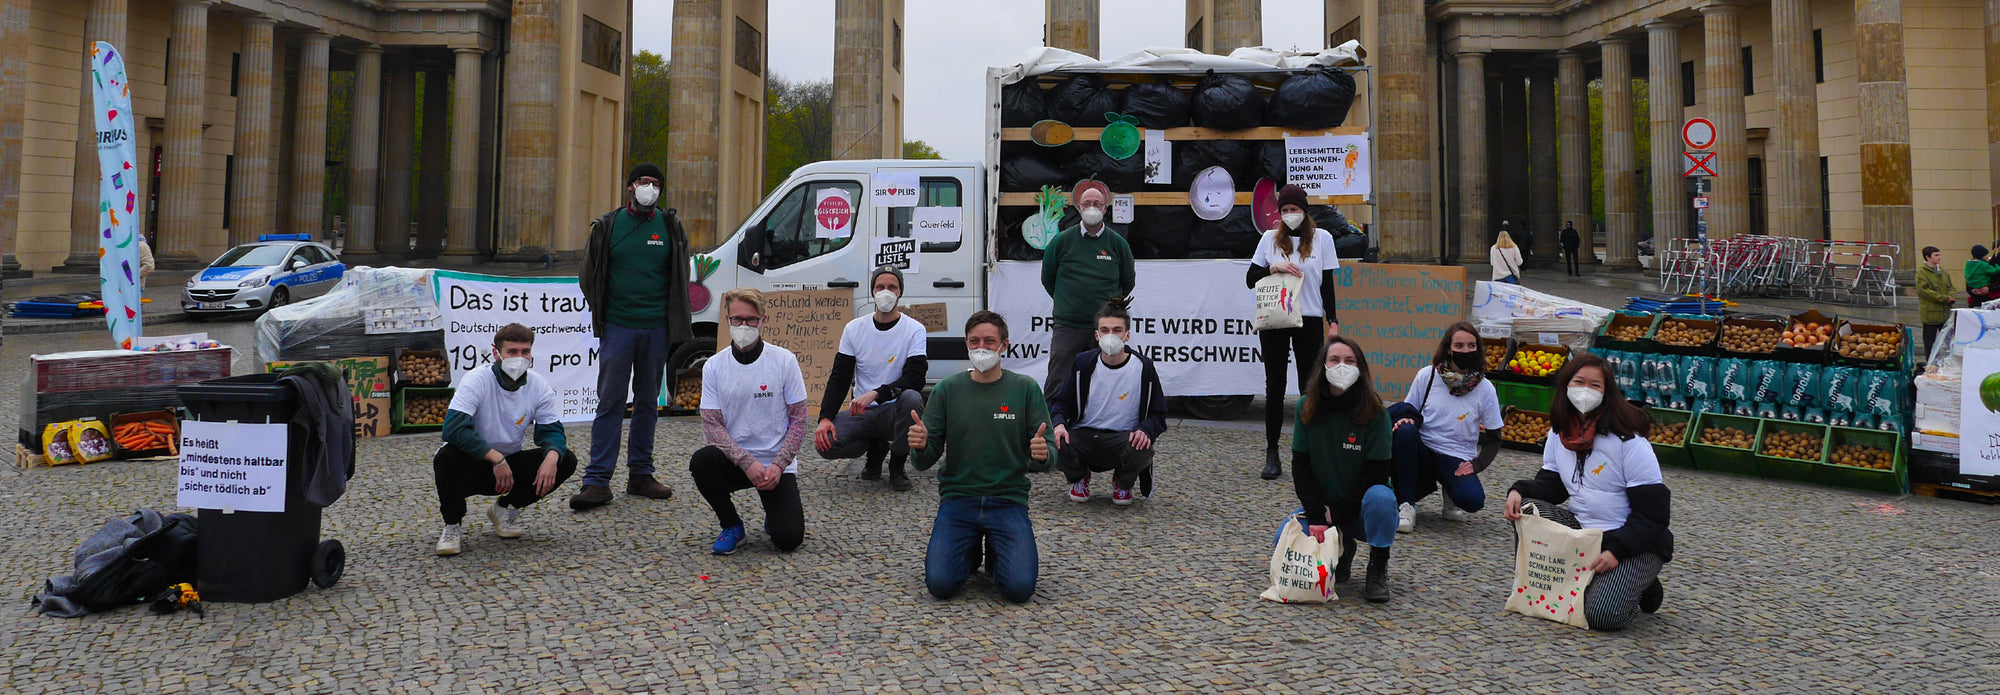 Tag der Lebensmittelverschwendung: Ein LKW und gerettete Kartoffeln vor dem Brandenburger Tor